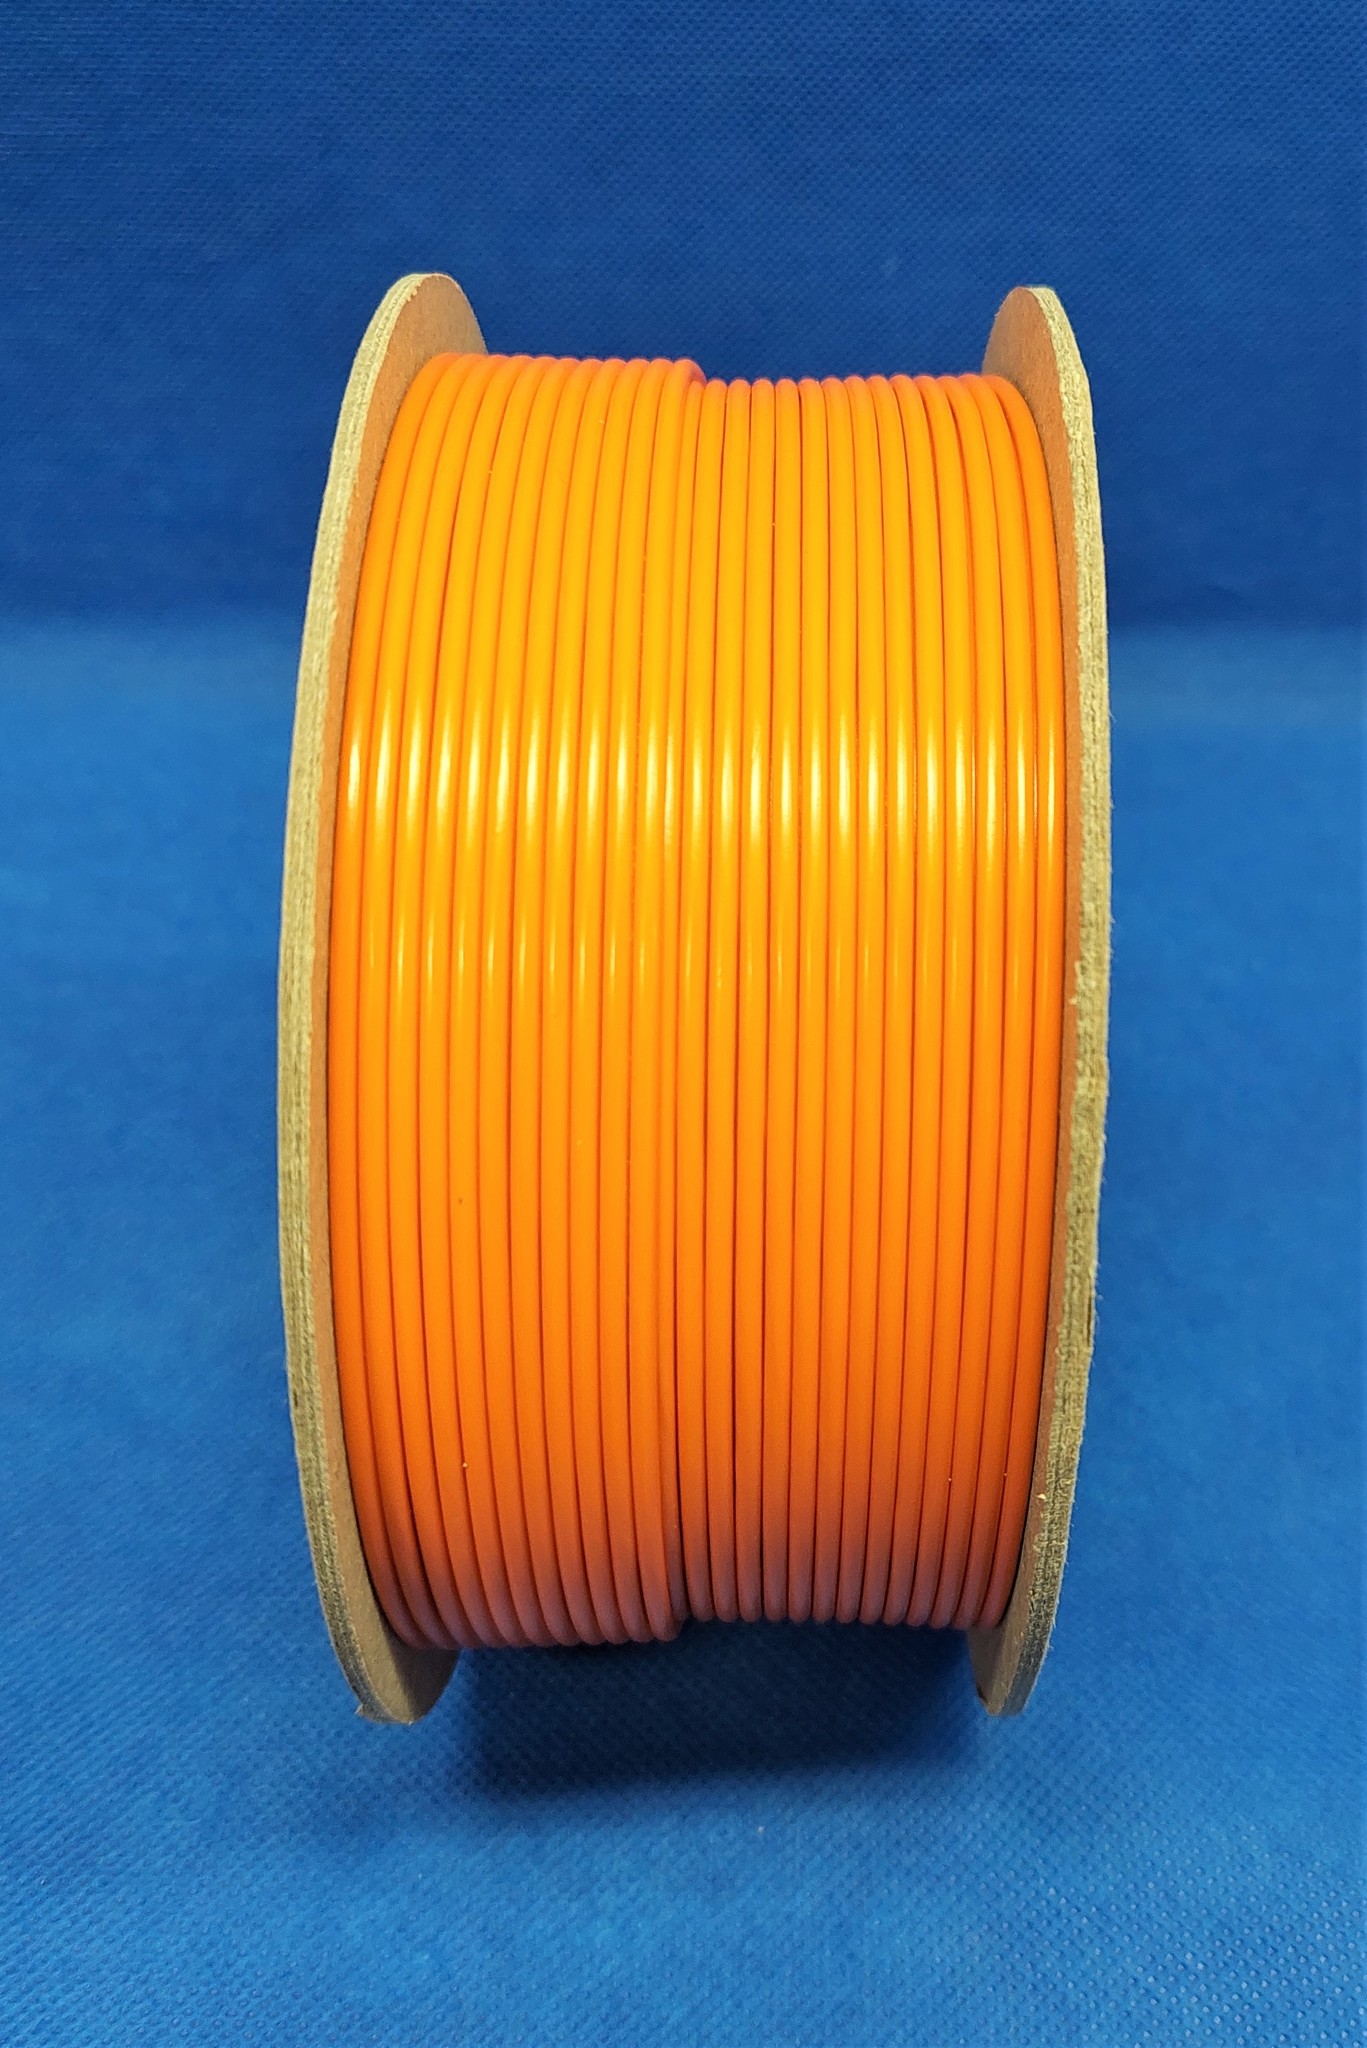 FLRY-B kabel 1,5mm - voertuigkabel - 100 meter op rol - Kleur Oranje 